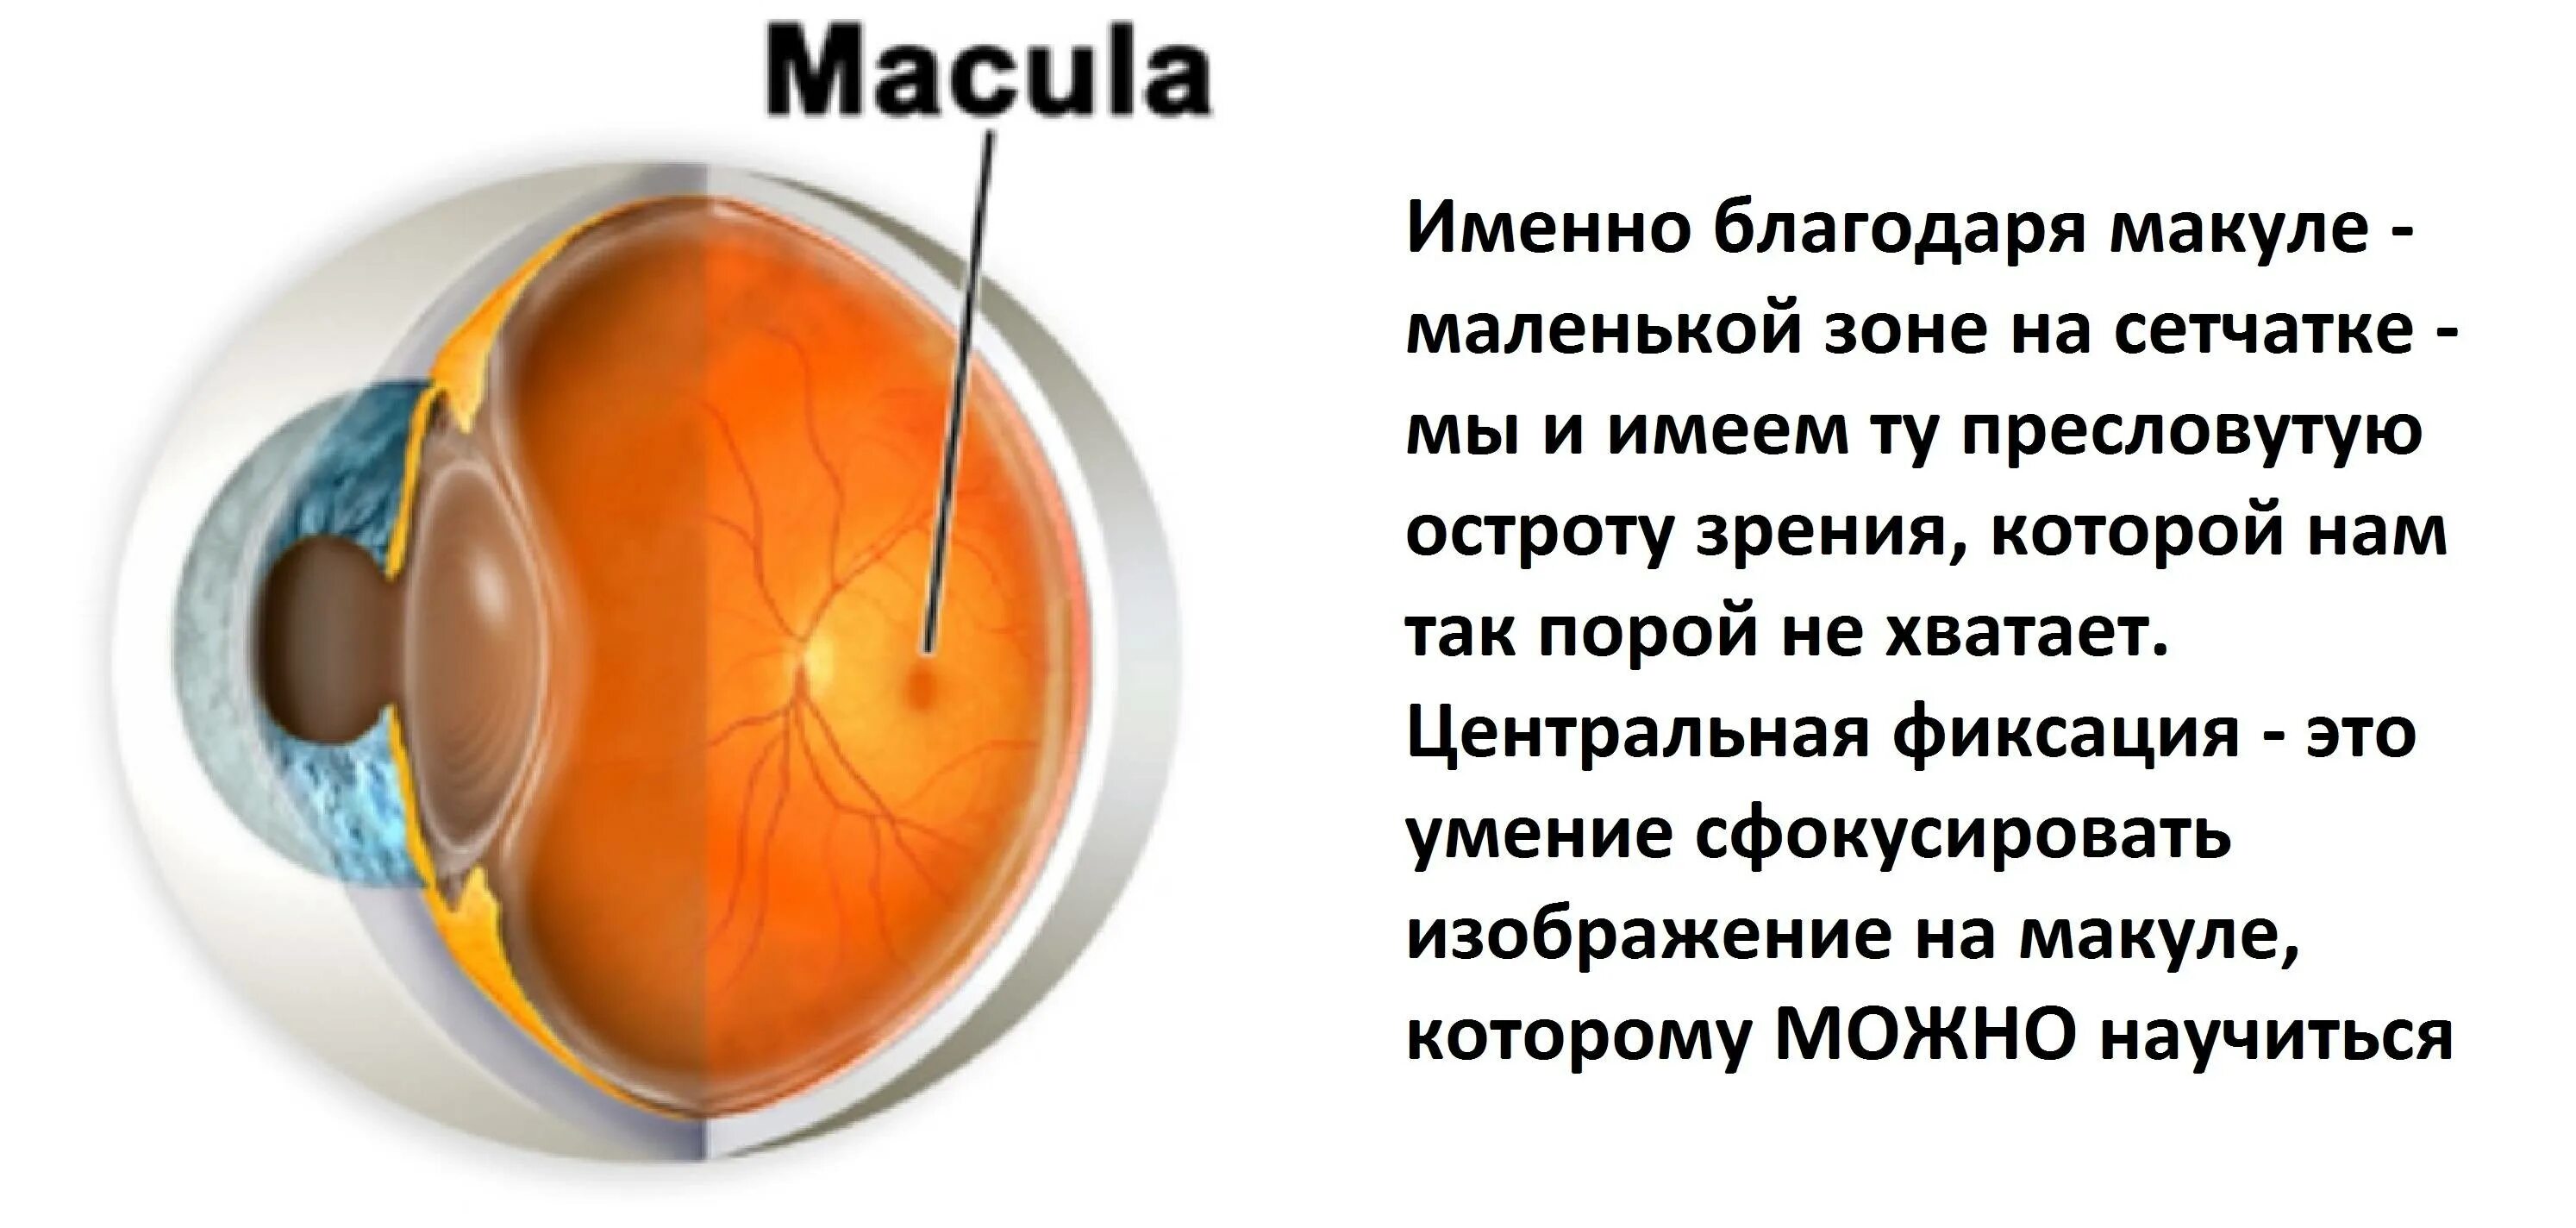 Макулярная дистрофия сетчатки. Строение глаза анатомия сетчатка желтое пятно. Строение сетчатки макула. Строение глаза макула.